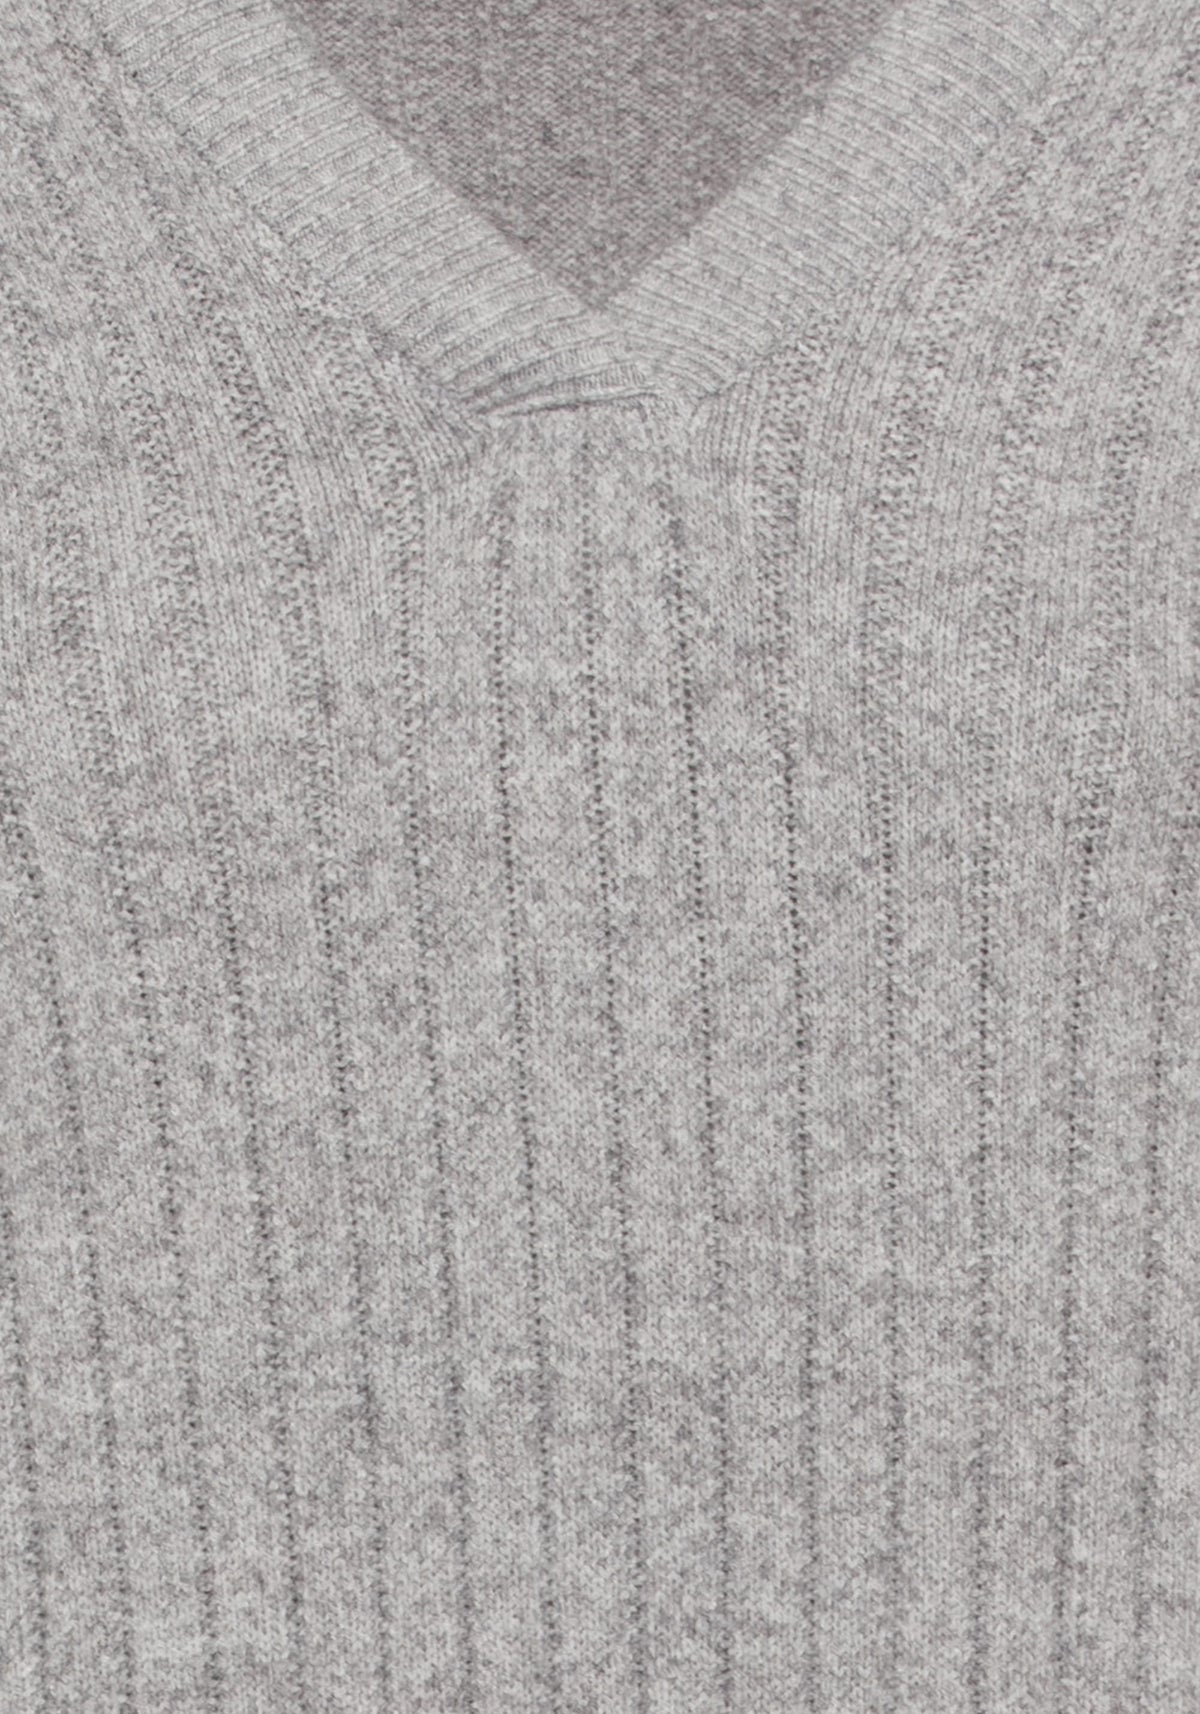 Long Sleeve Broad Rib Knit Midi Sweater Dress